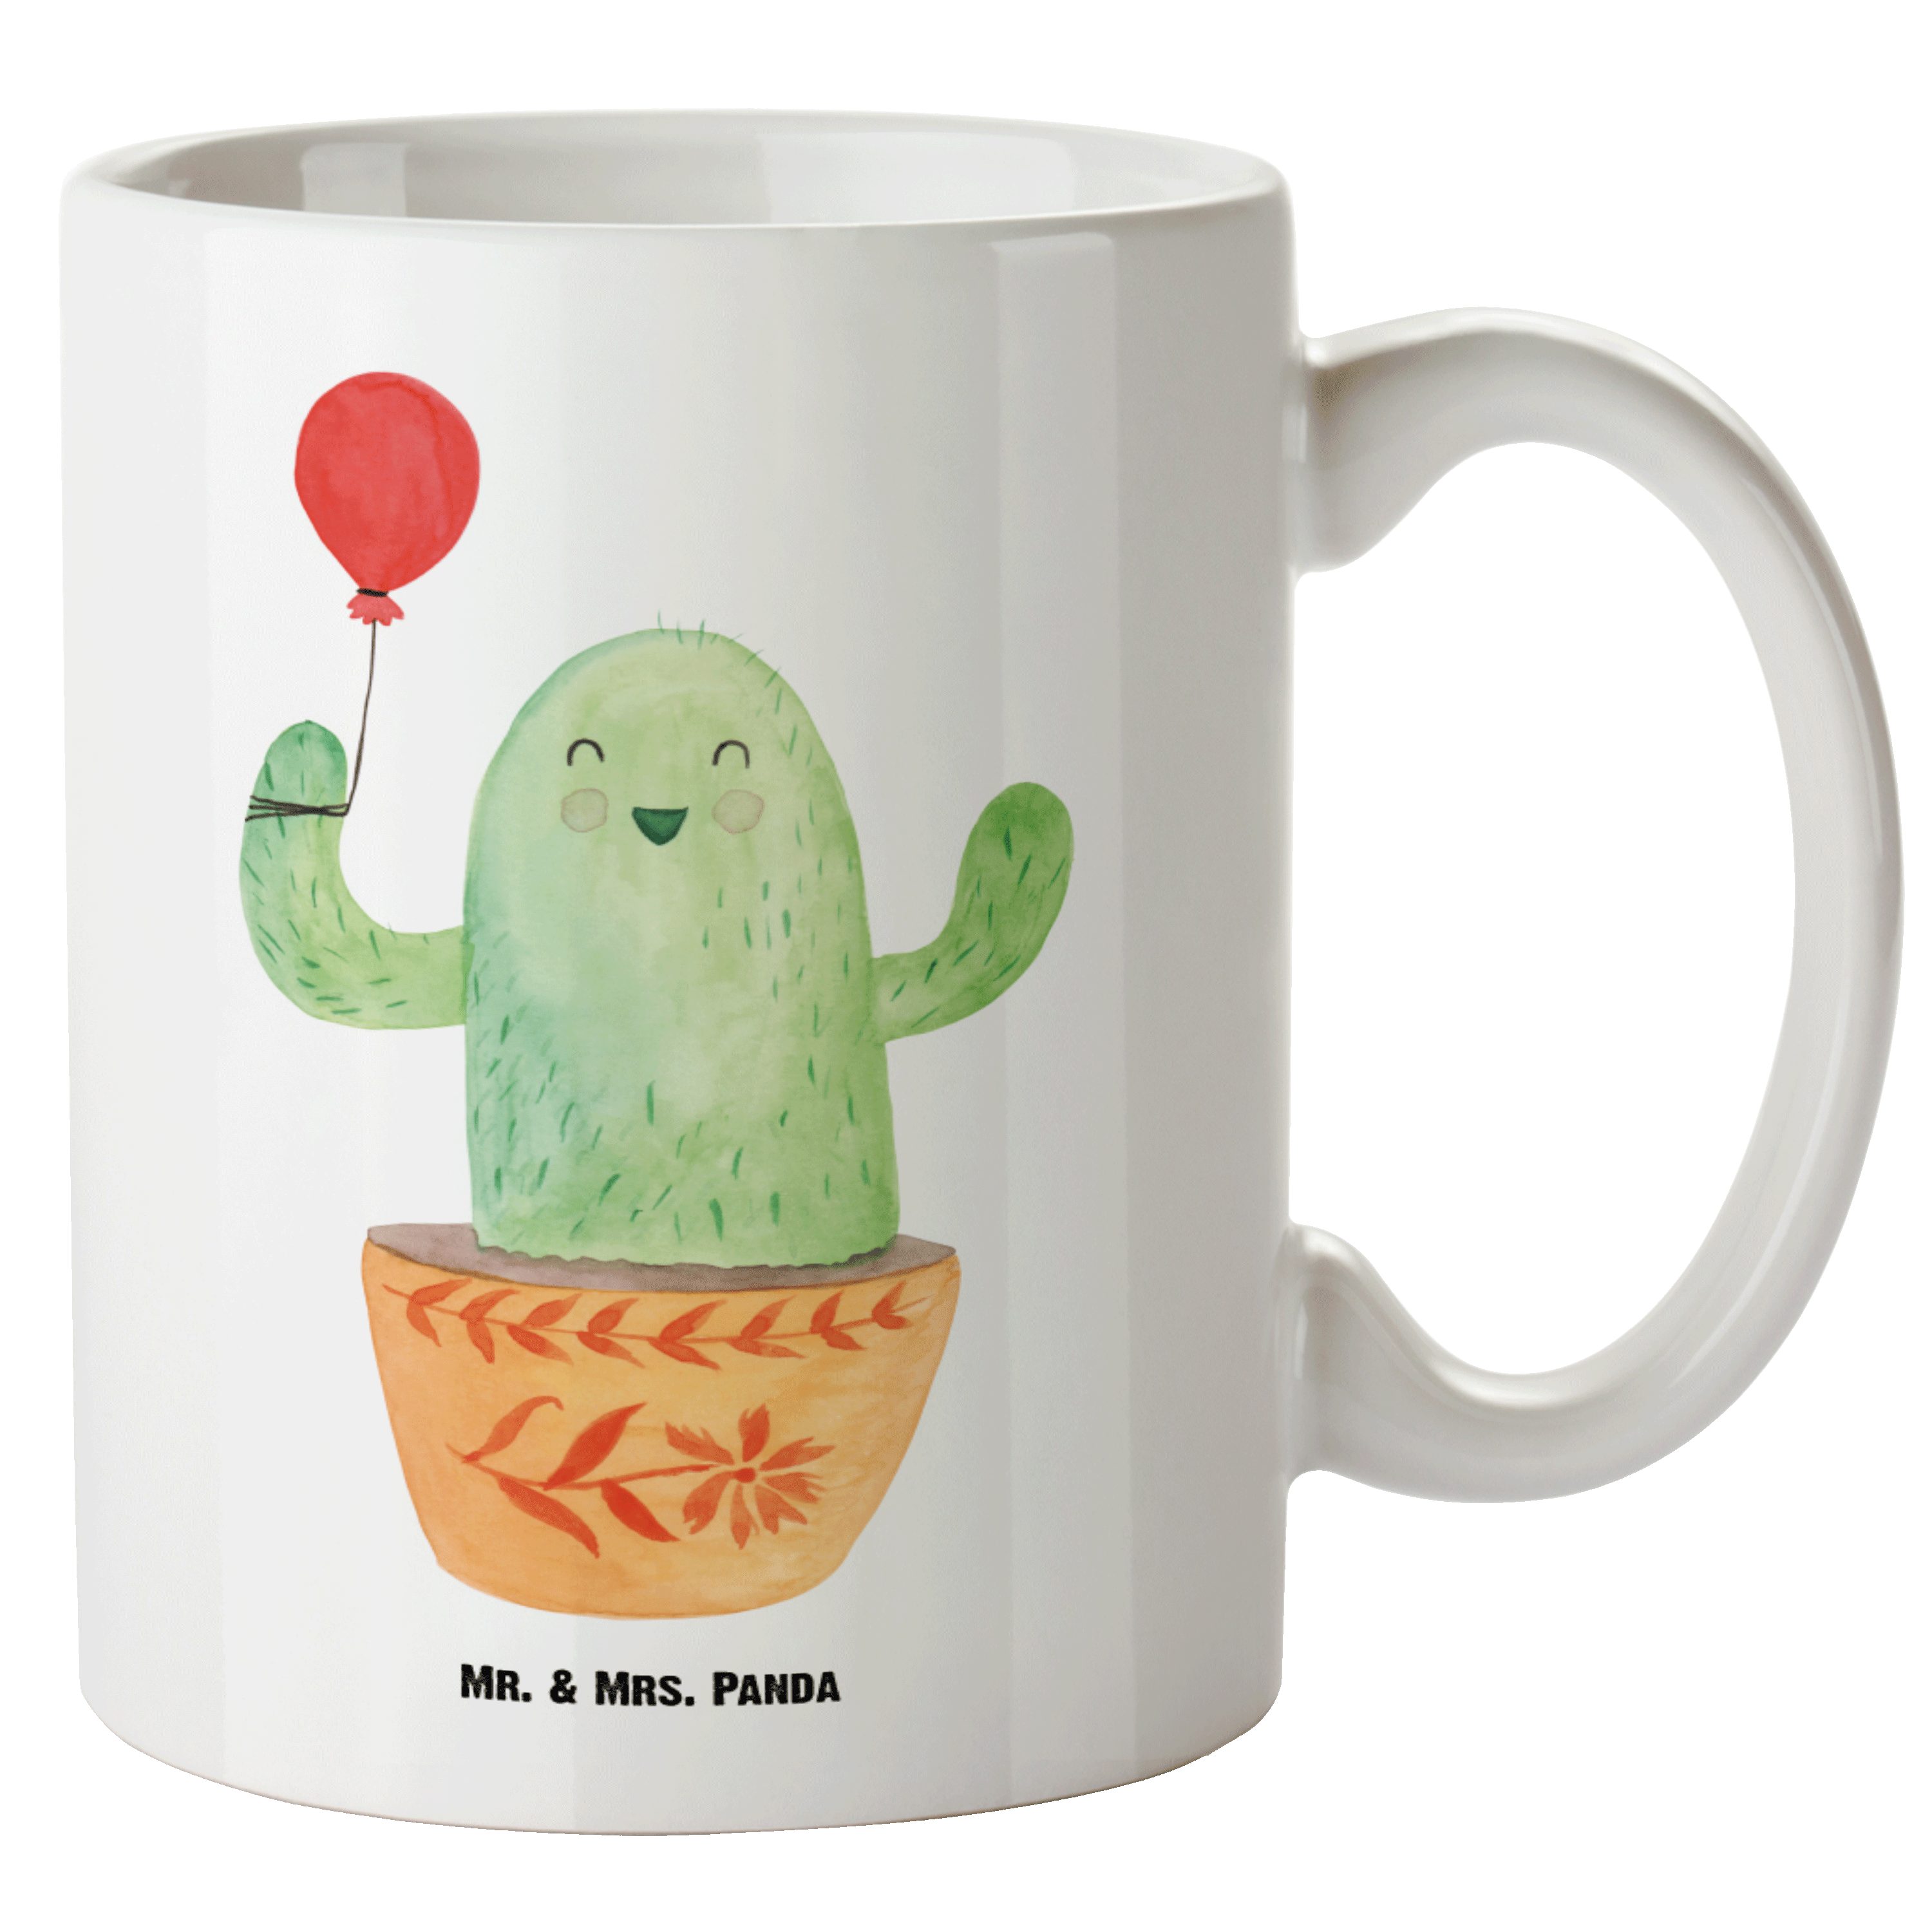 Mr. & Mrs. Panda Tasse Kaktus Luftballon - Weiß - Geschenk, spülmaschinenfest, XL Tasse, Gro, XL Tasse Keramik